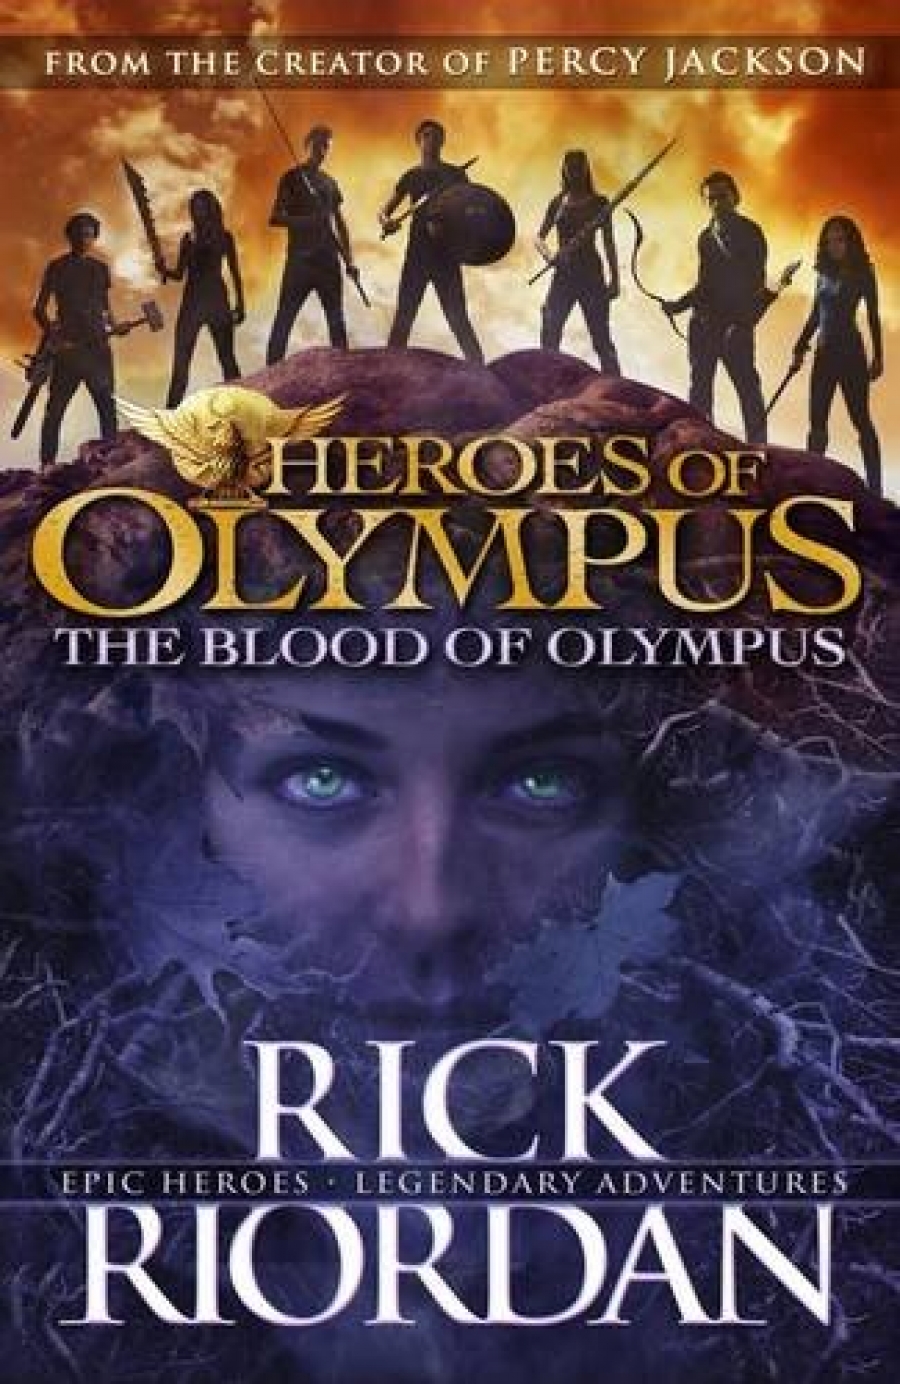 Riordan Rick The Blood of Olympus: Heroes of Olympus Book 5 